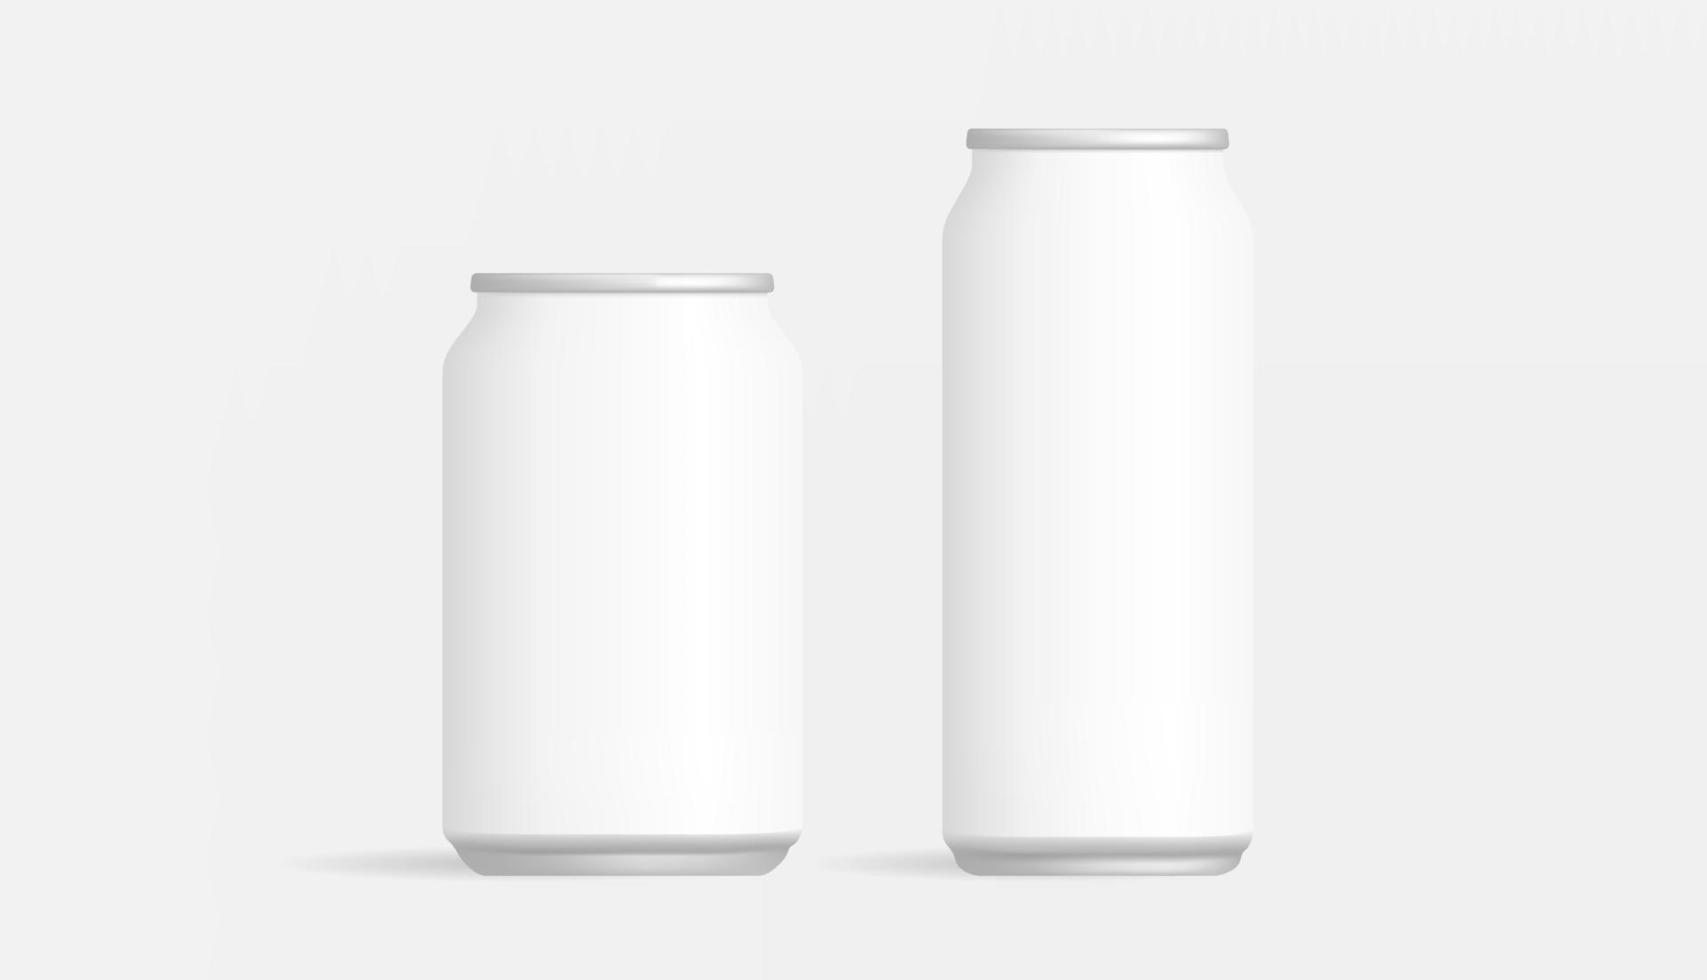 realistico Opaco birra freddo bevanda può Prodotto il branding modello confezione vetrina modello vettore